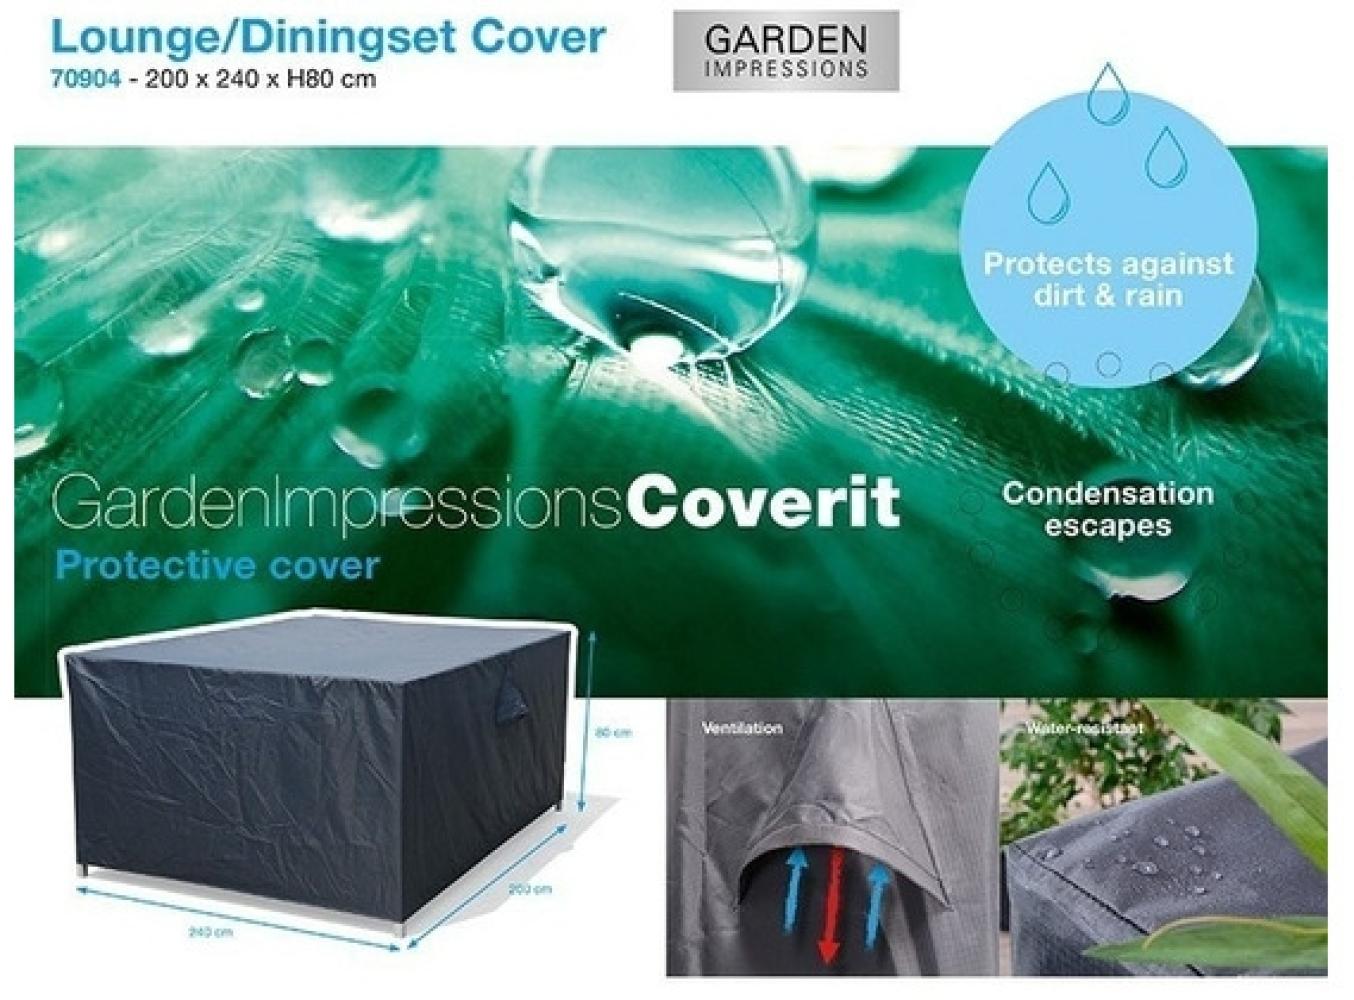 Garden Impressions Coverit Lounge / Ess-Hacken 200x240xH80 Bild 1